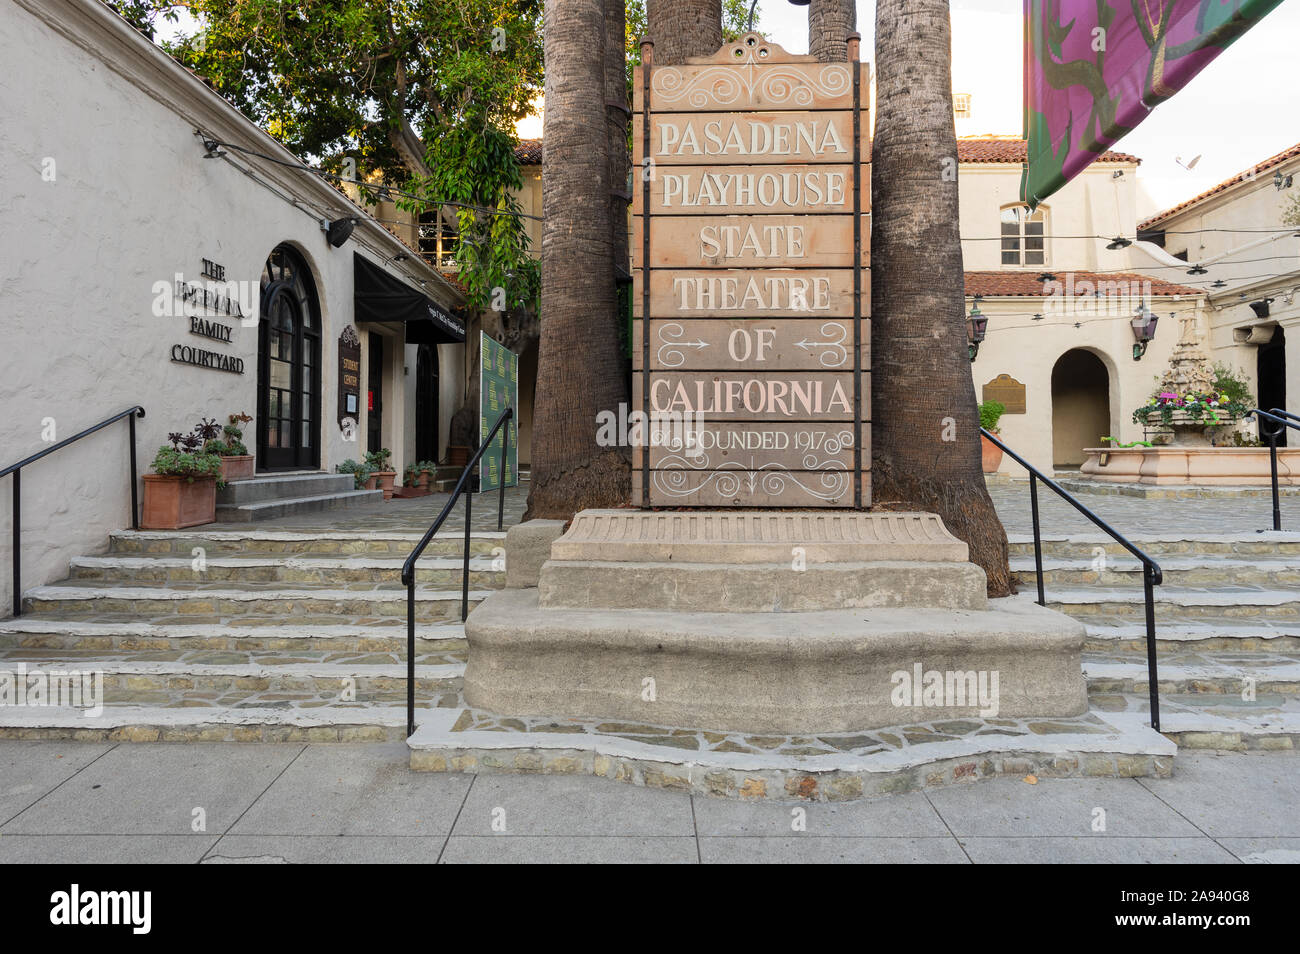 La cour Pasadena Playhouse dans le comté de Los Angeles. Ce théâtre est le théâtre officiel de l'État de Californie. Banque D'Images